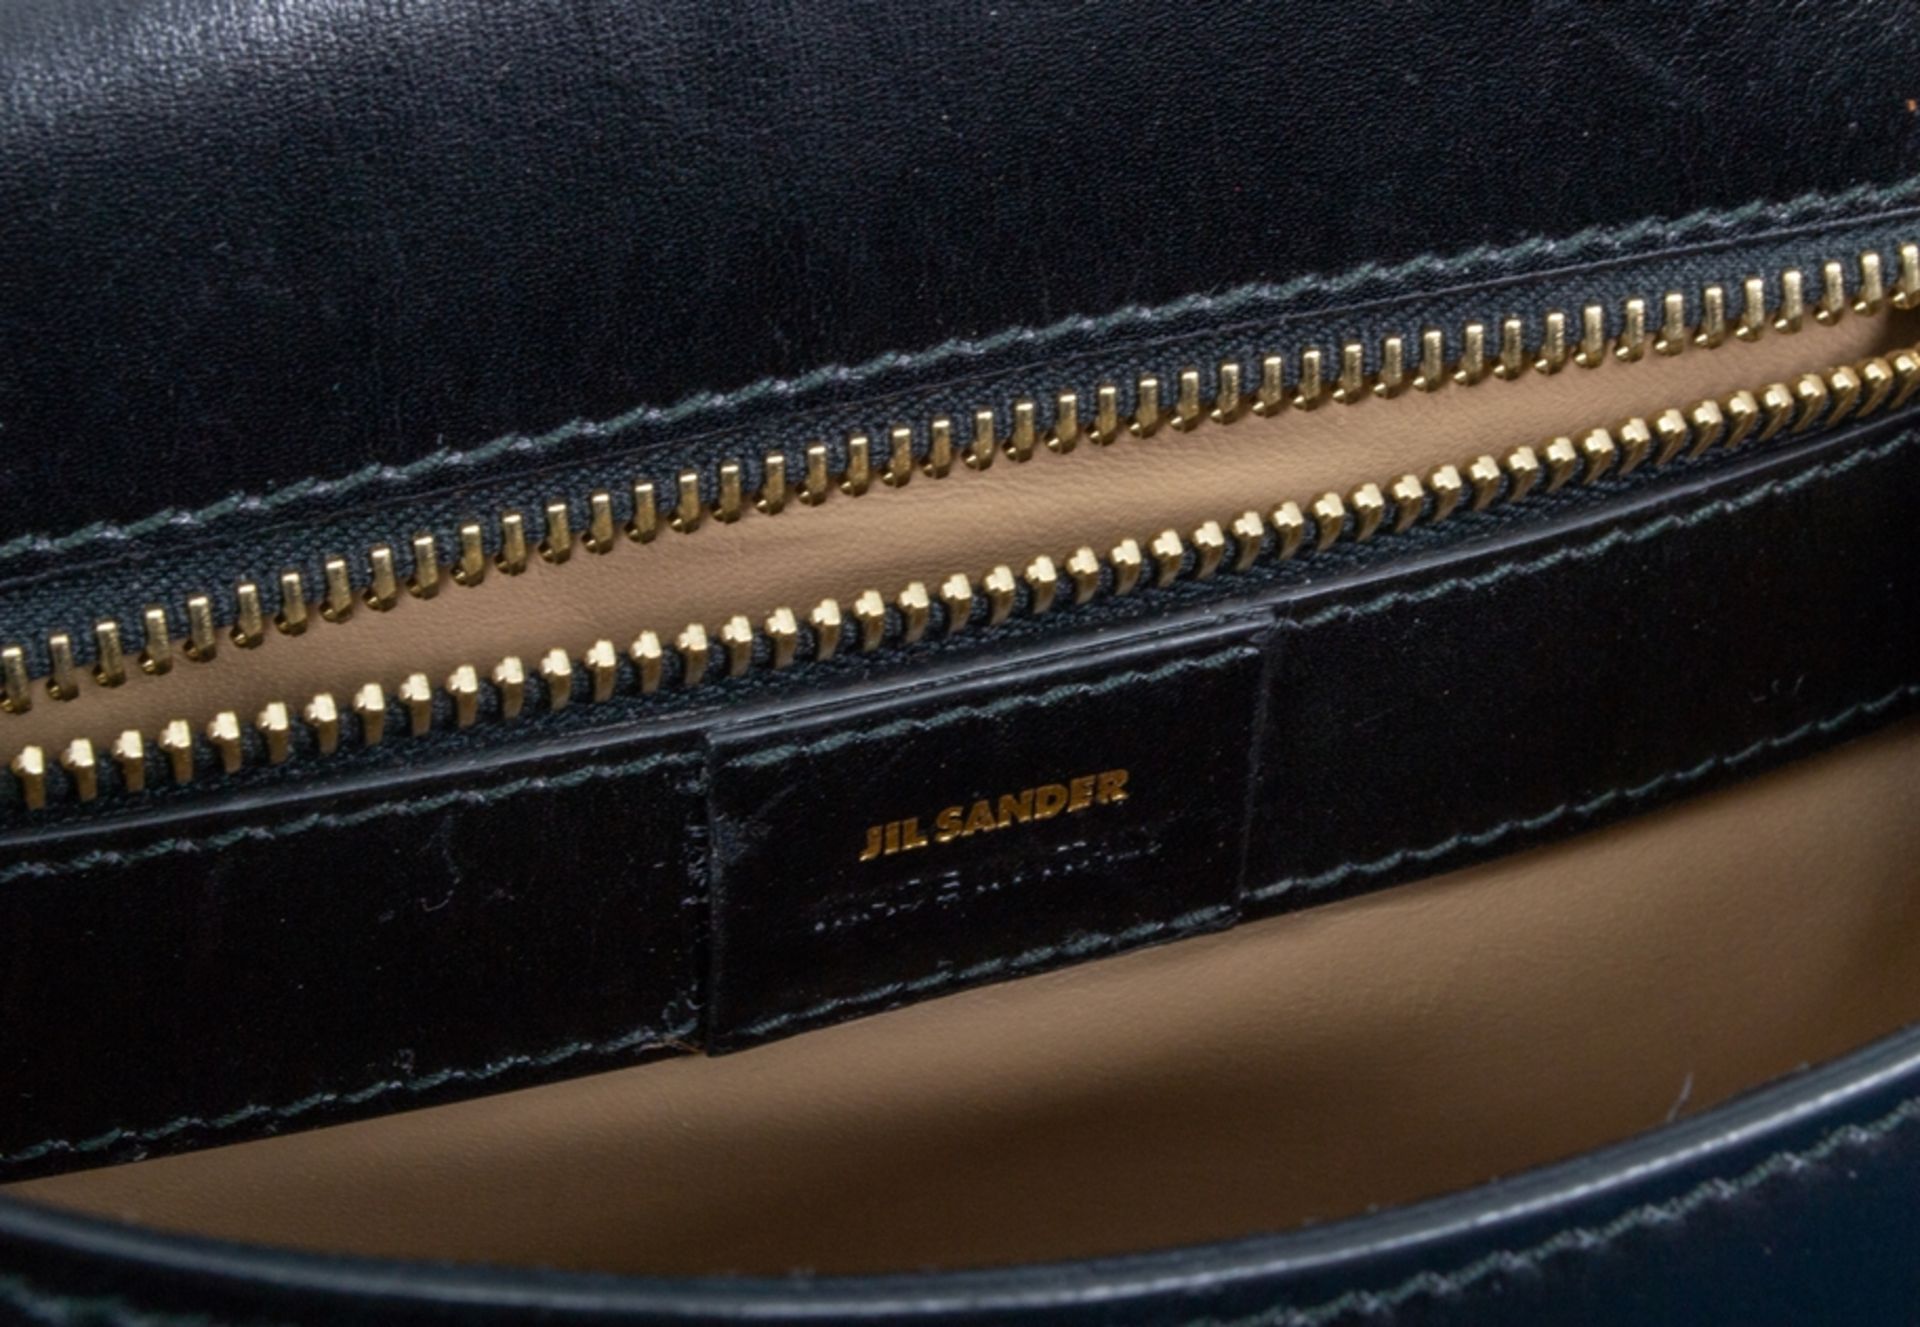 JIL SANDER - Damenhandtasche/Umhängetasche, schwarzes Leder mit polierten Messing-Beschlägen/ - Bild 6 aus 9